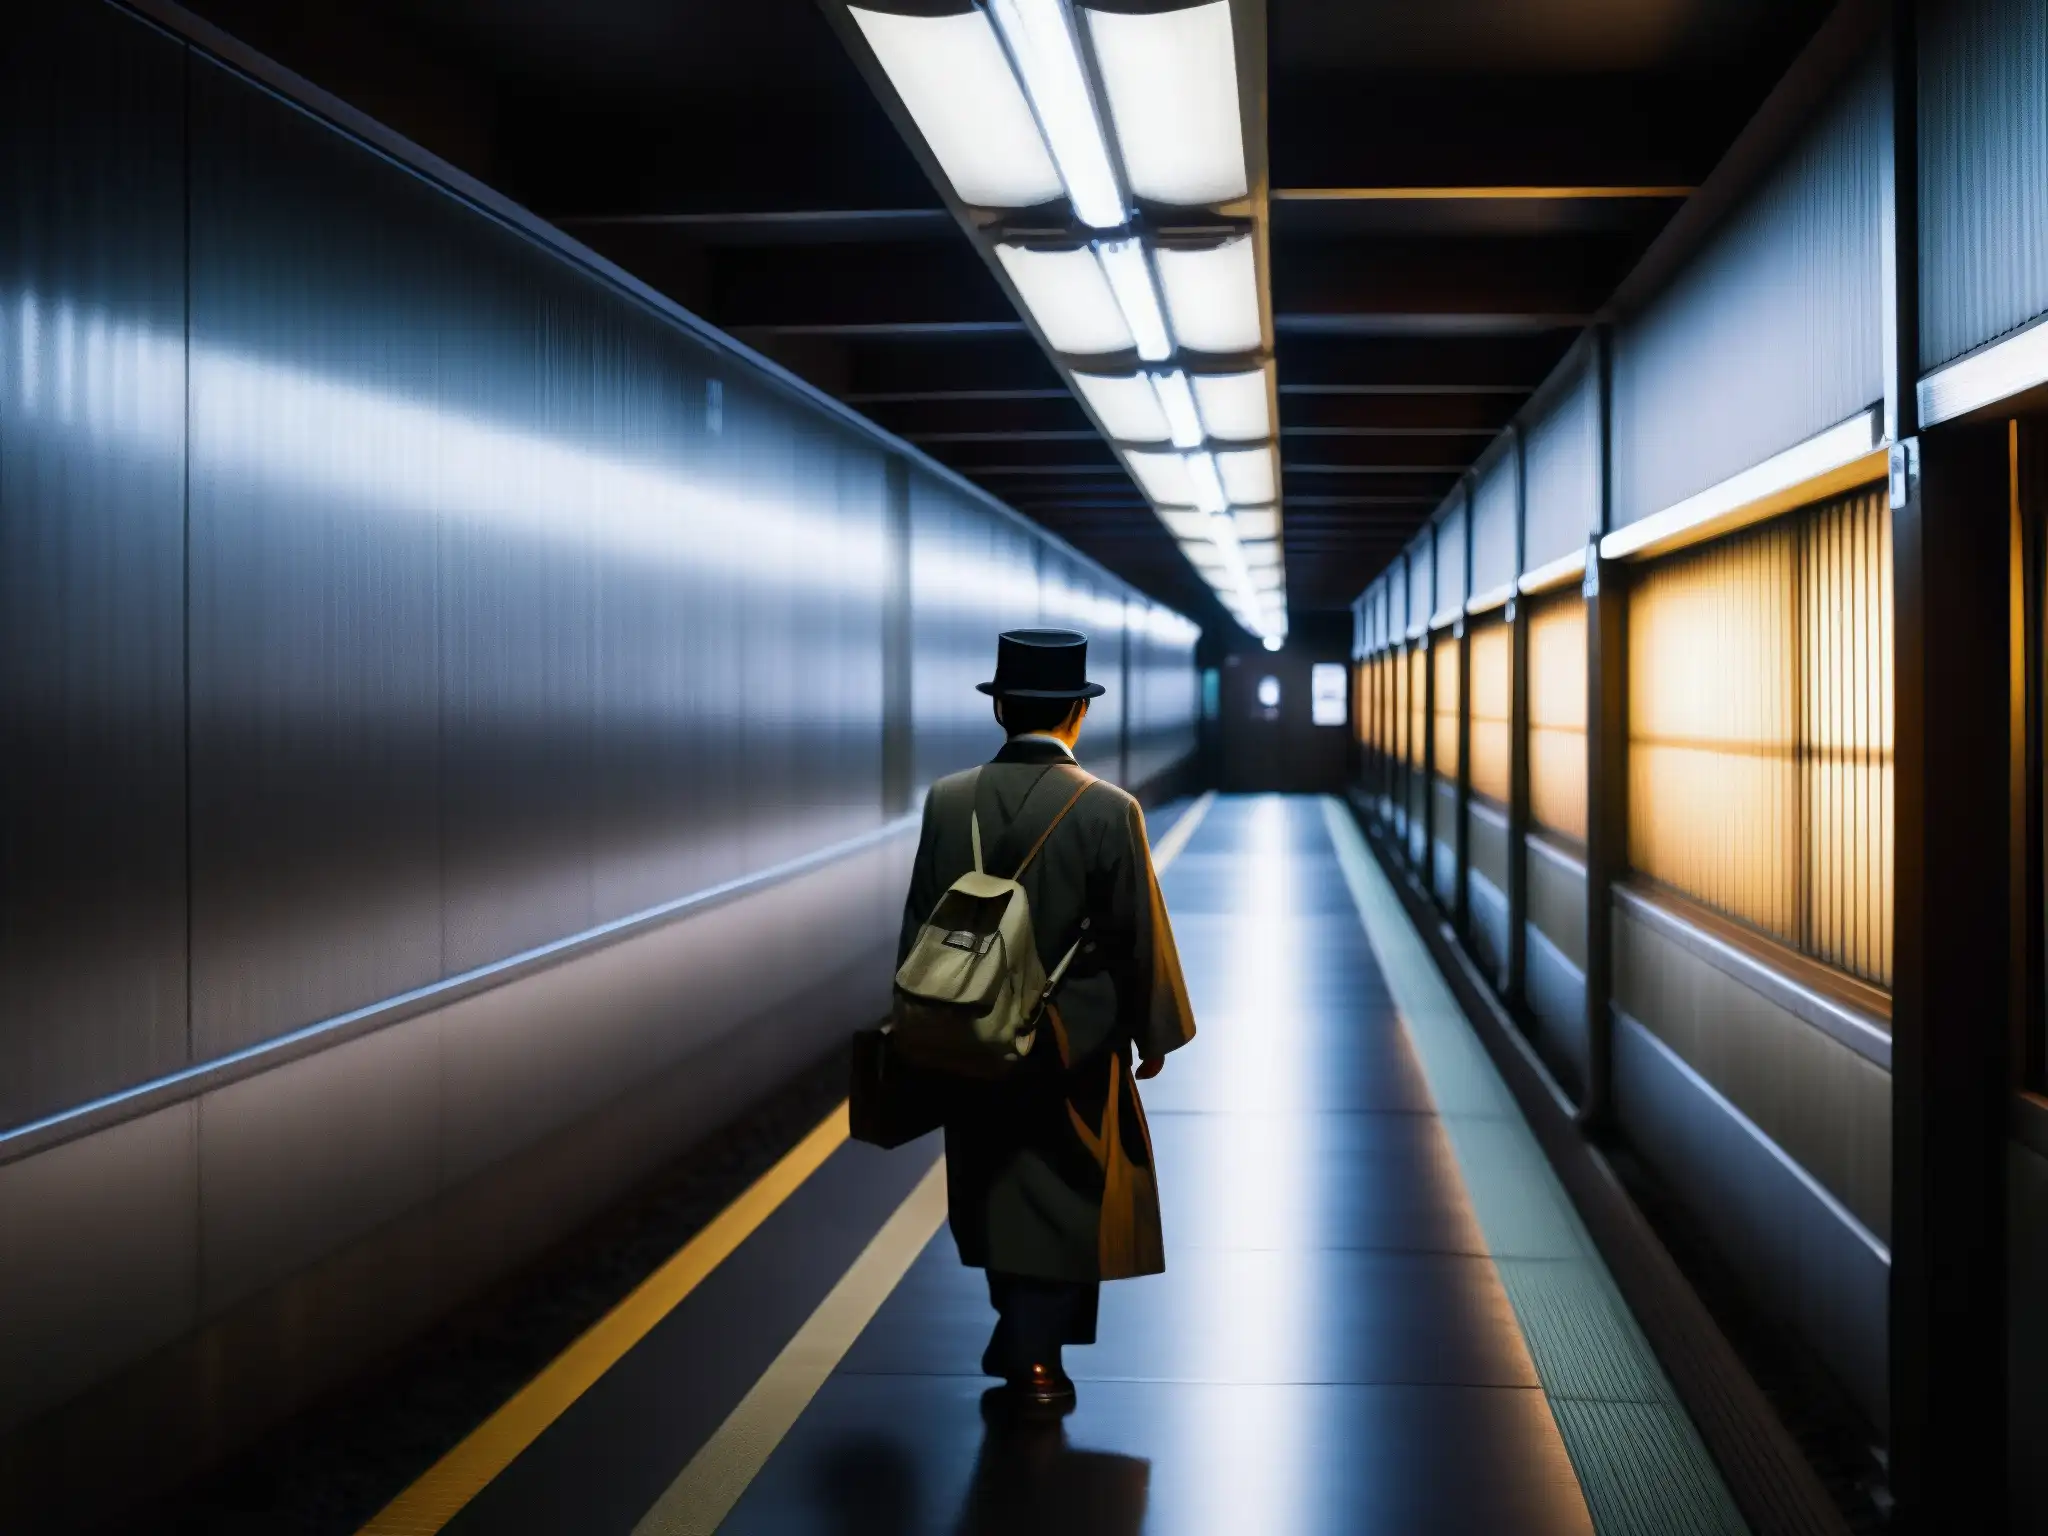 En la estación Kisaragi, un pasillo oscuro con luces parpadeantes crea una atmósfera inquietante